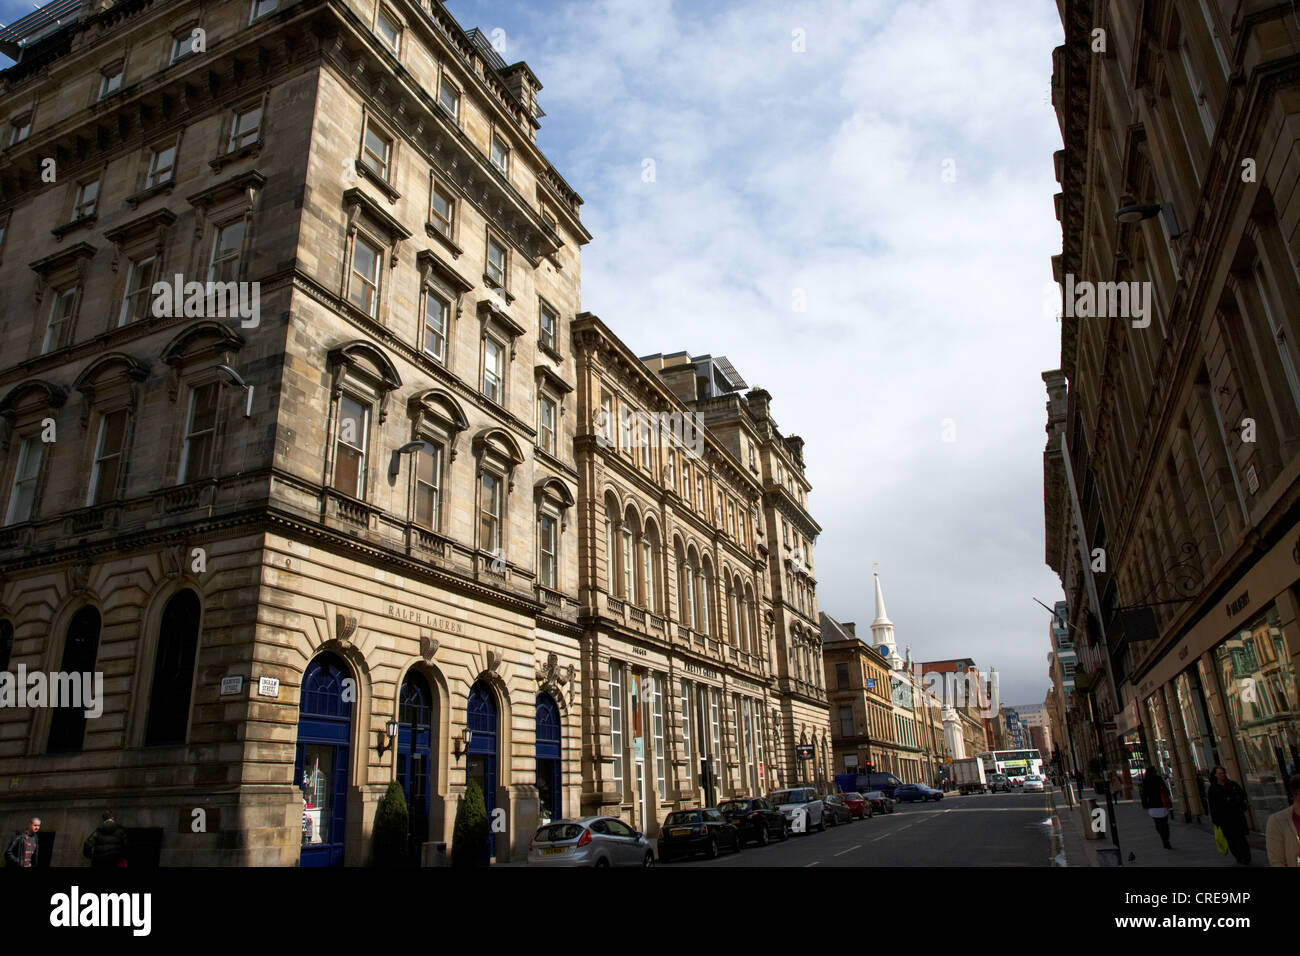 Ingram street gehobenen Einkaufsstraße in Handelsstadt Glasgow Schottland, Vereinigtes Königreich Stockfoto